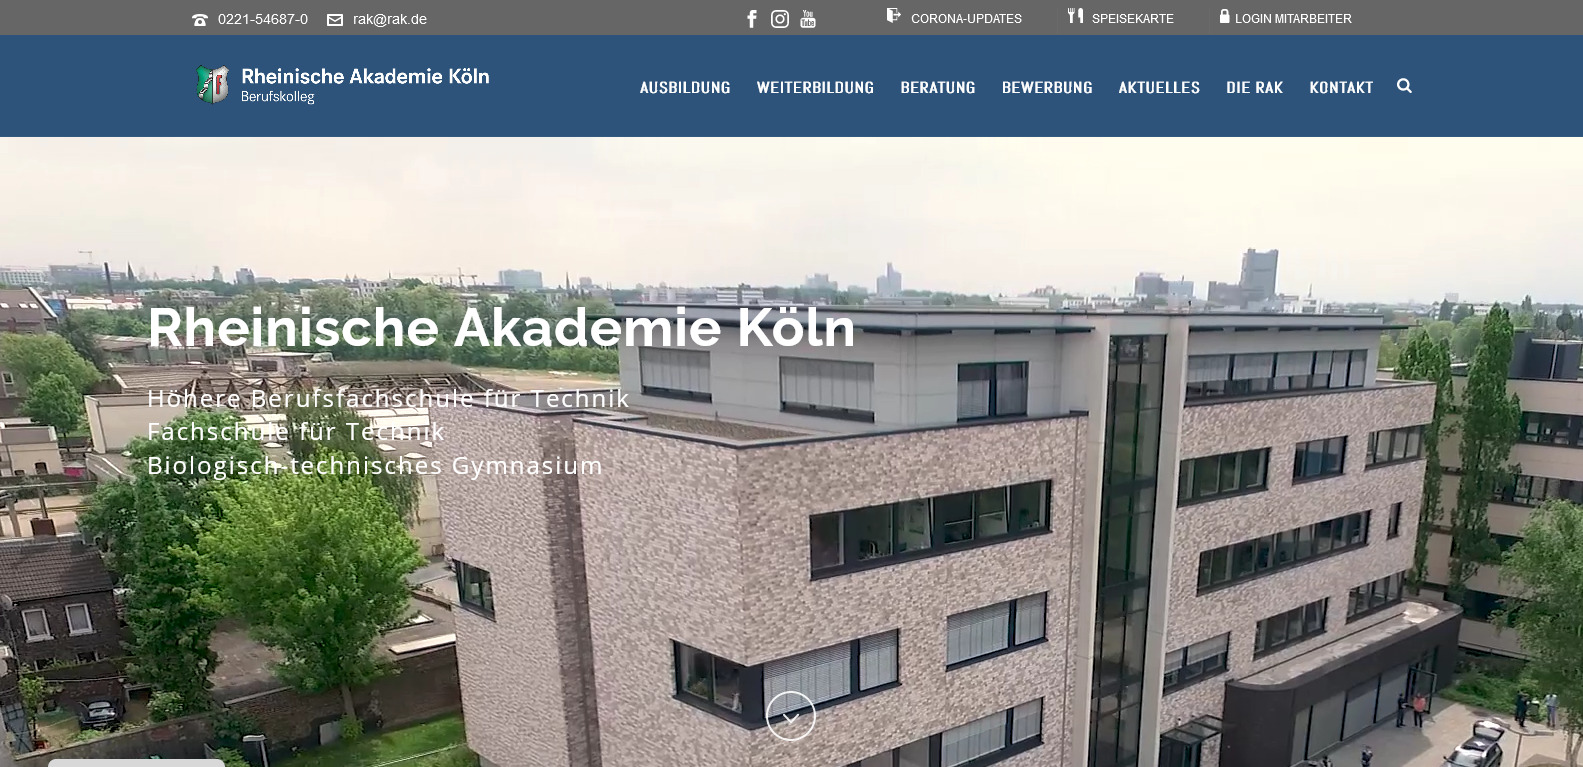 Website-Relaunch: Rheinische Akademie Köln